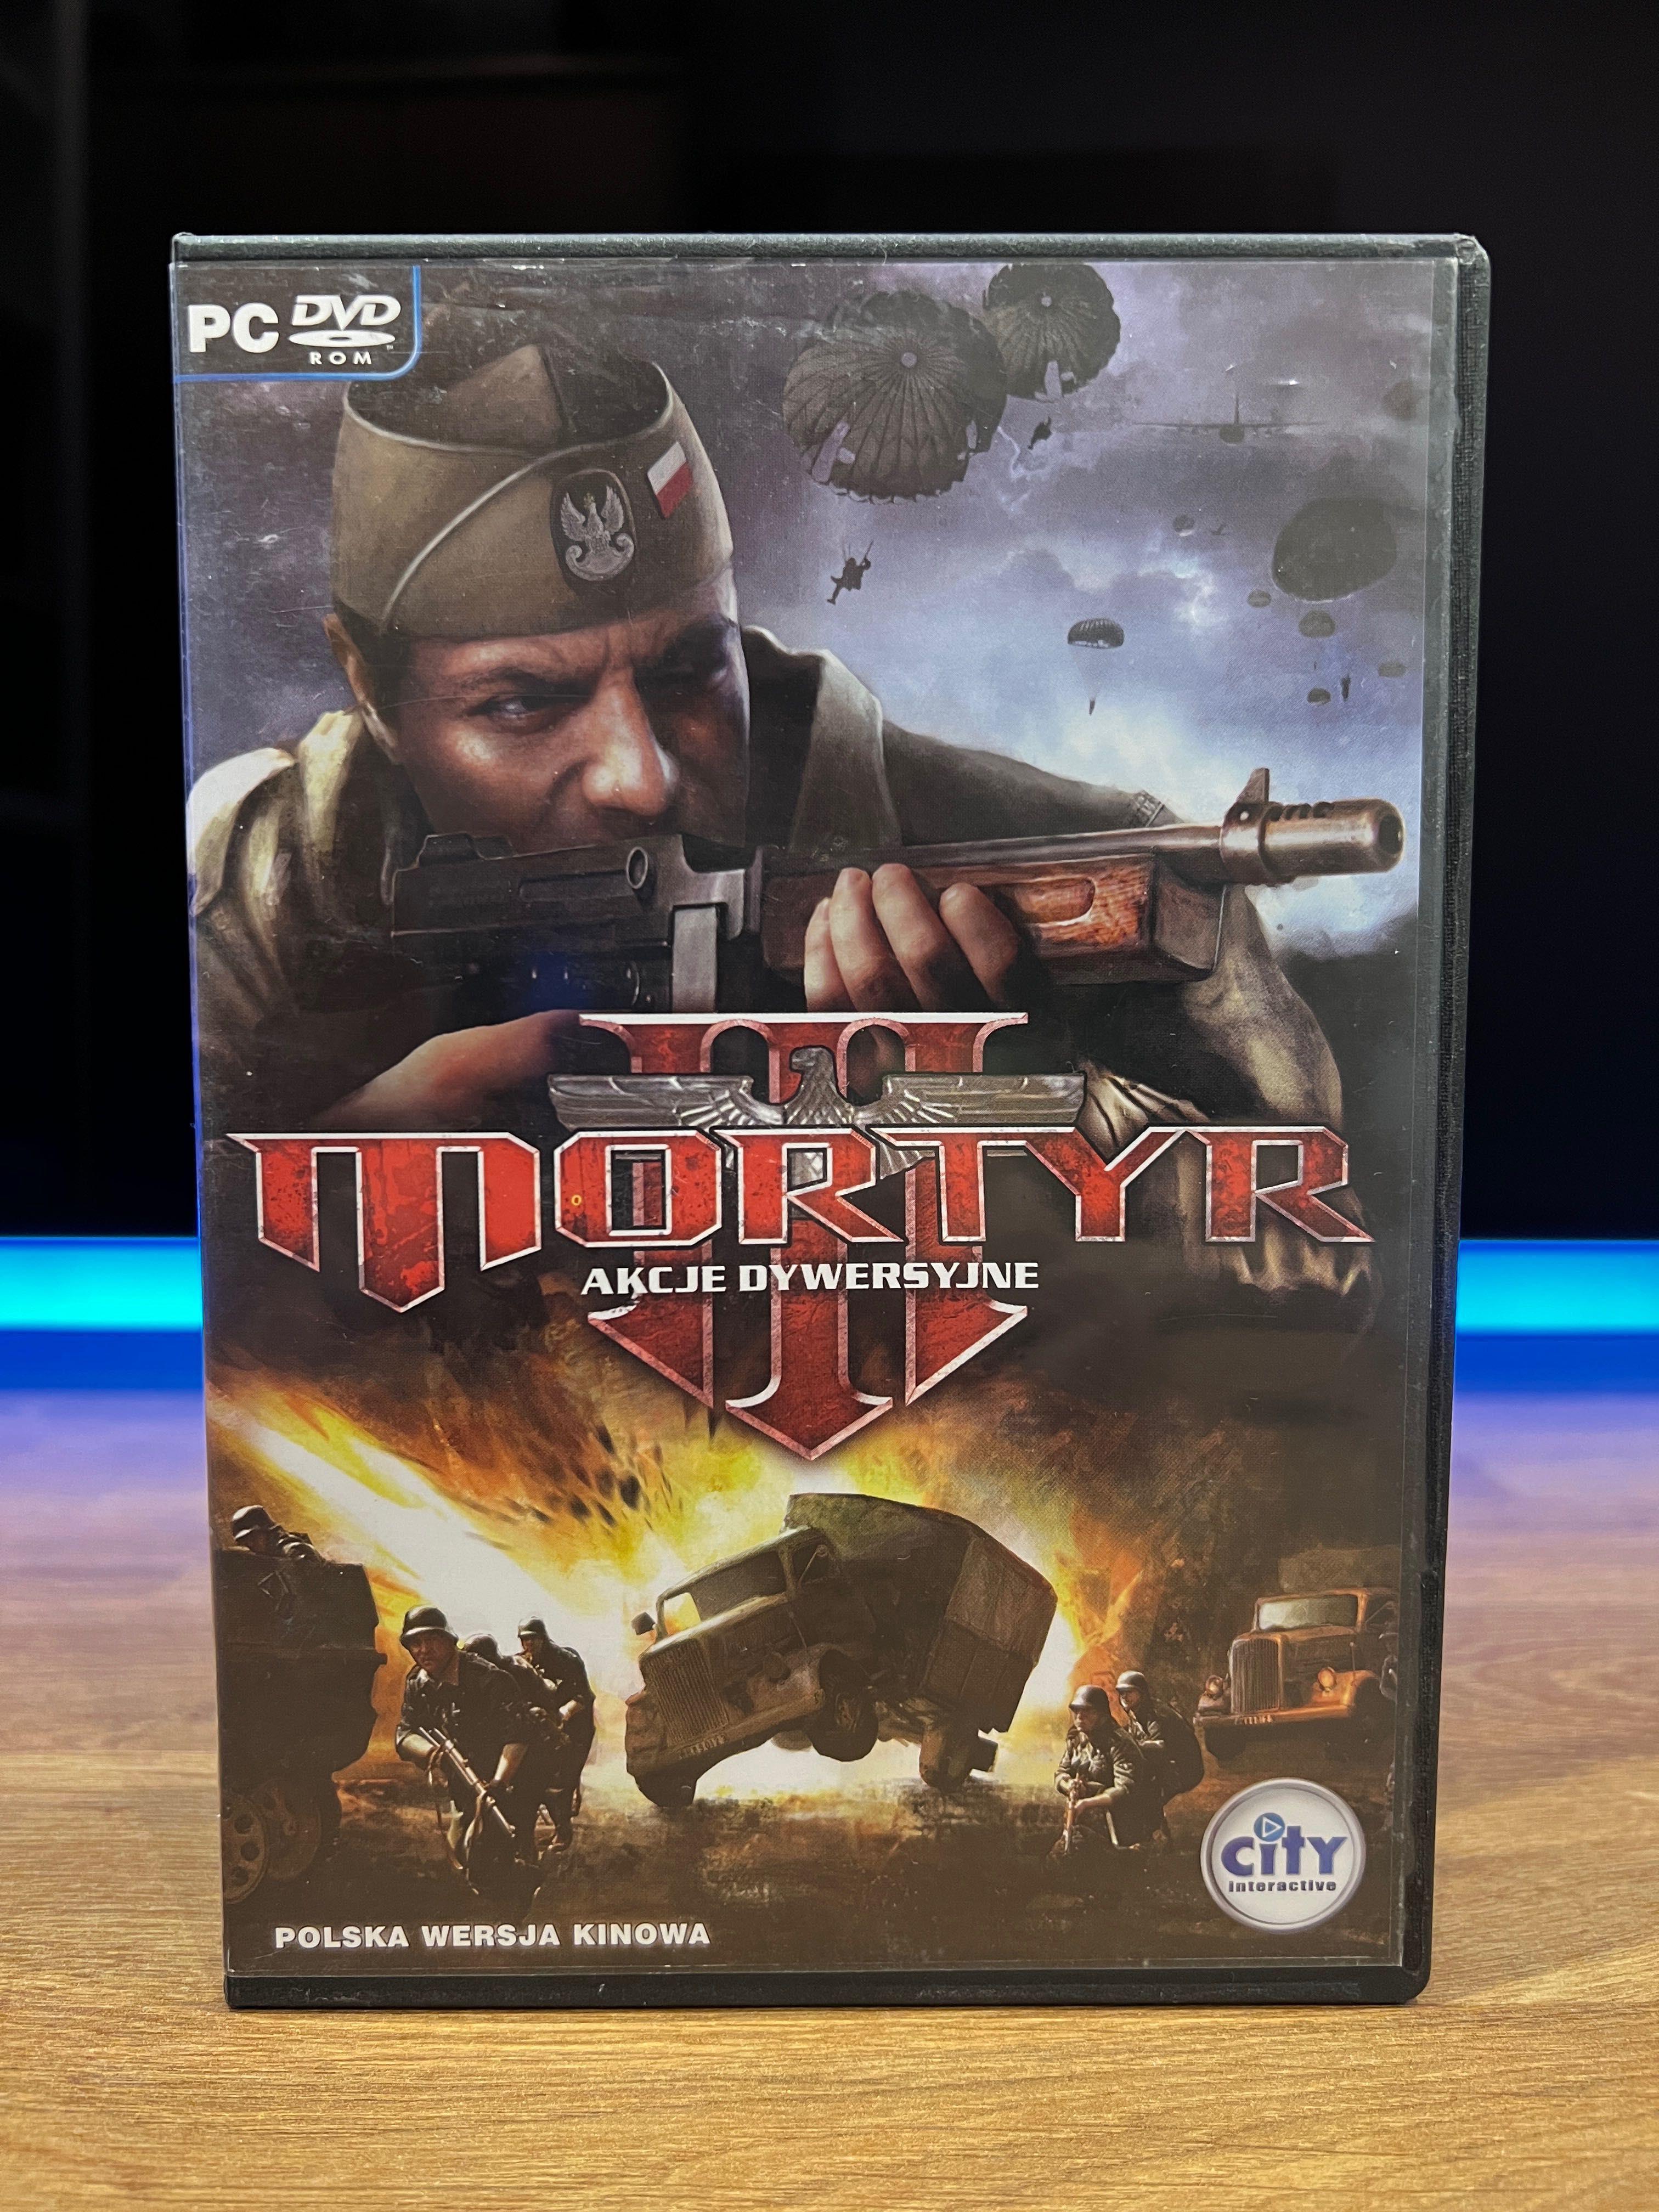 Mortyr III 3 Akcje Dywersyjne (PC PL 2007) polskie wydanie